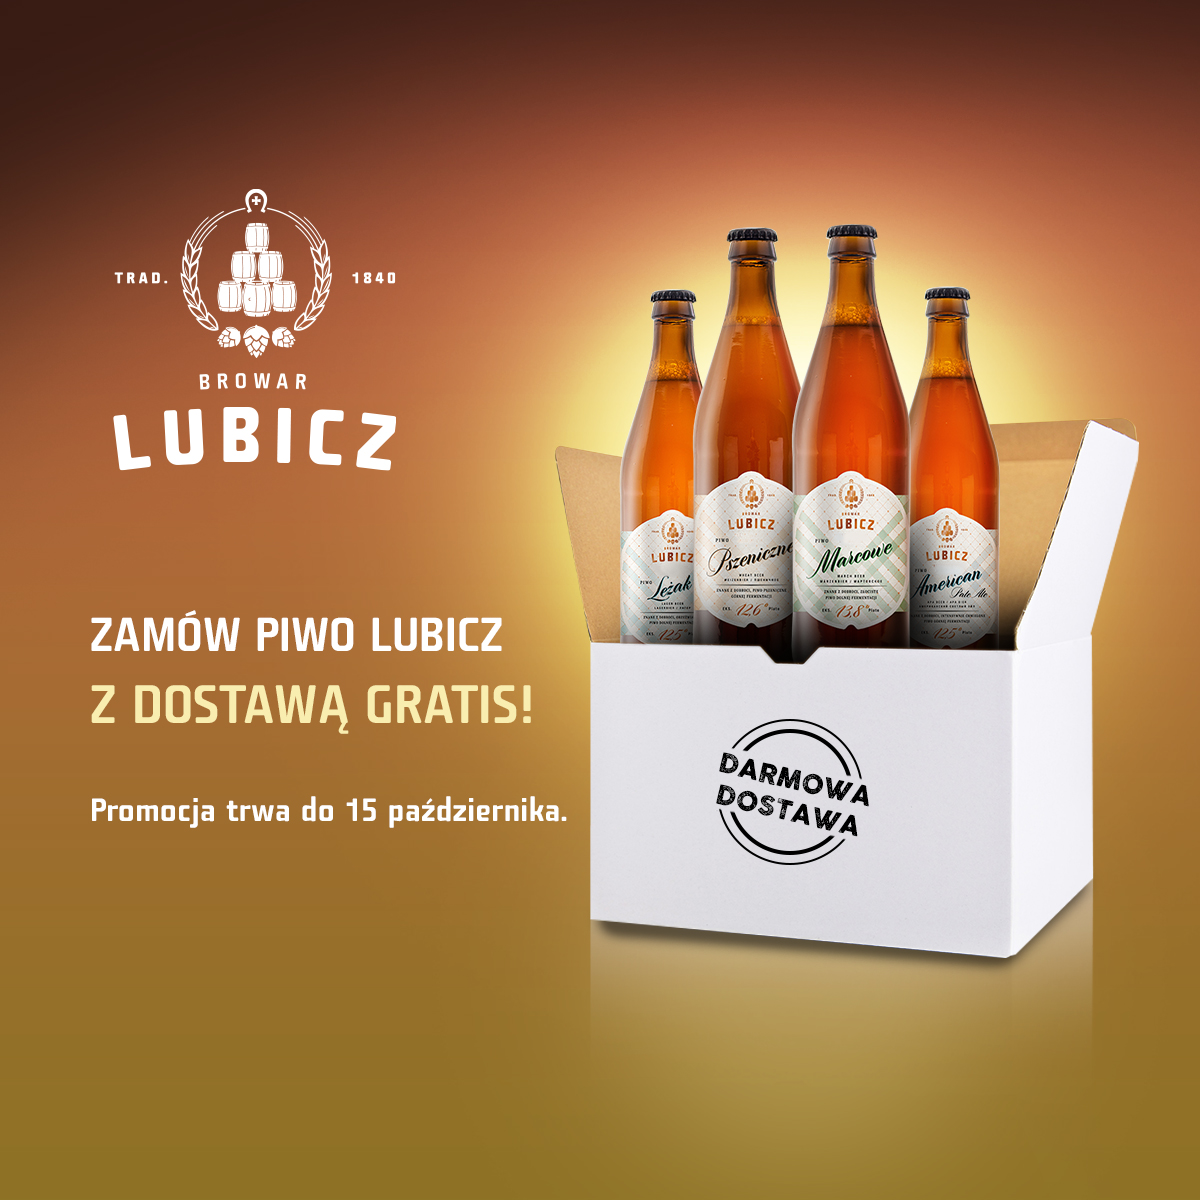 Browar Lubicz dostępny już w całej Polsce! Dostawa gratis do 15 października.